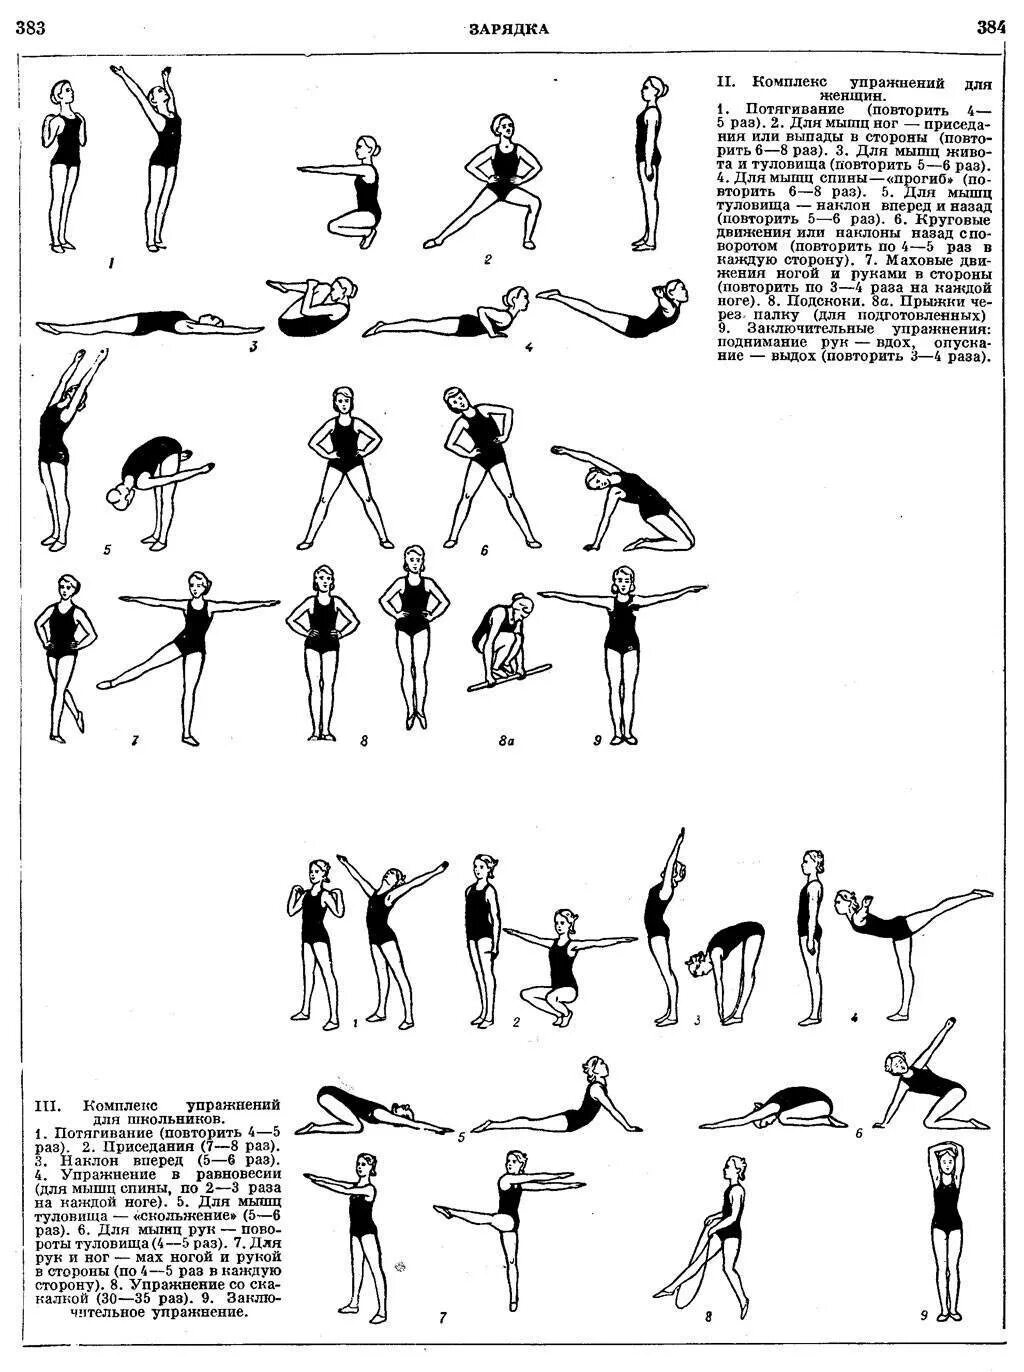 Ежедневно выполняемые упражнения. Комплекс упражнений утренней гимнастики для женщин. Комплекс упражнений утренней зарядки таблица. Комплекс упражнений для утренней зарядки для женщин. Утренняя гимнастика СССР комплекс упражнений.